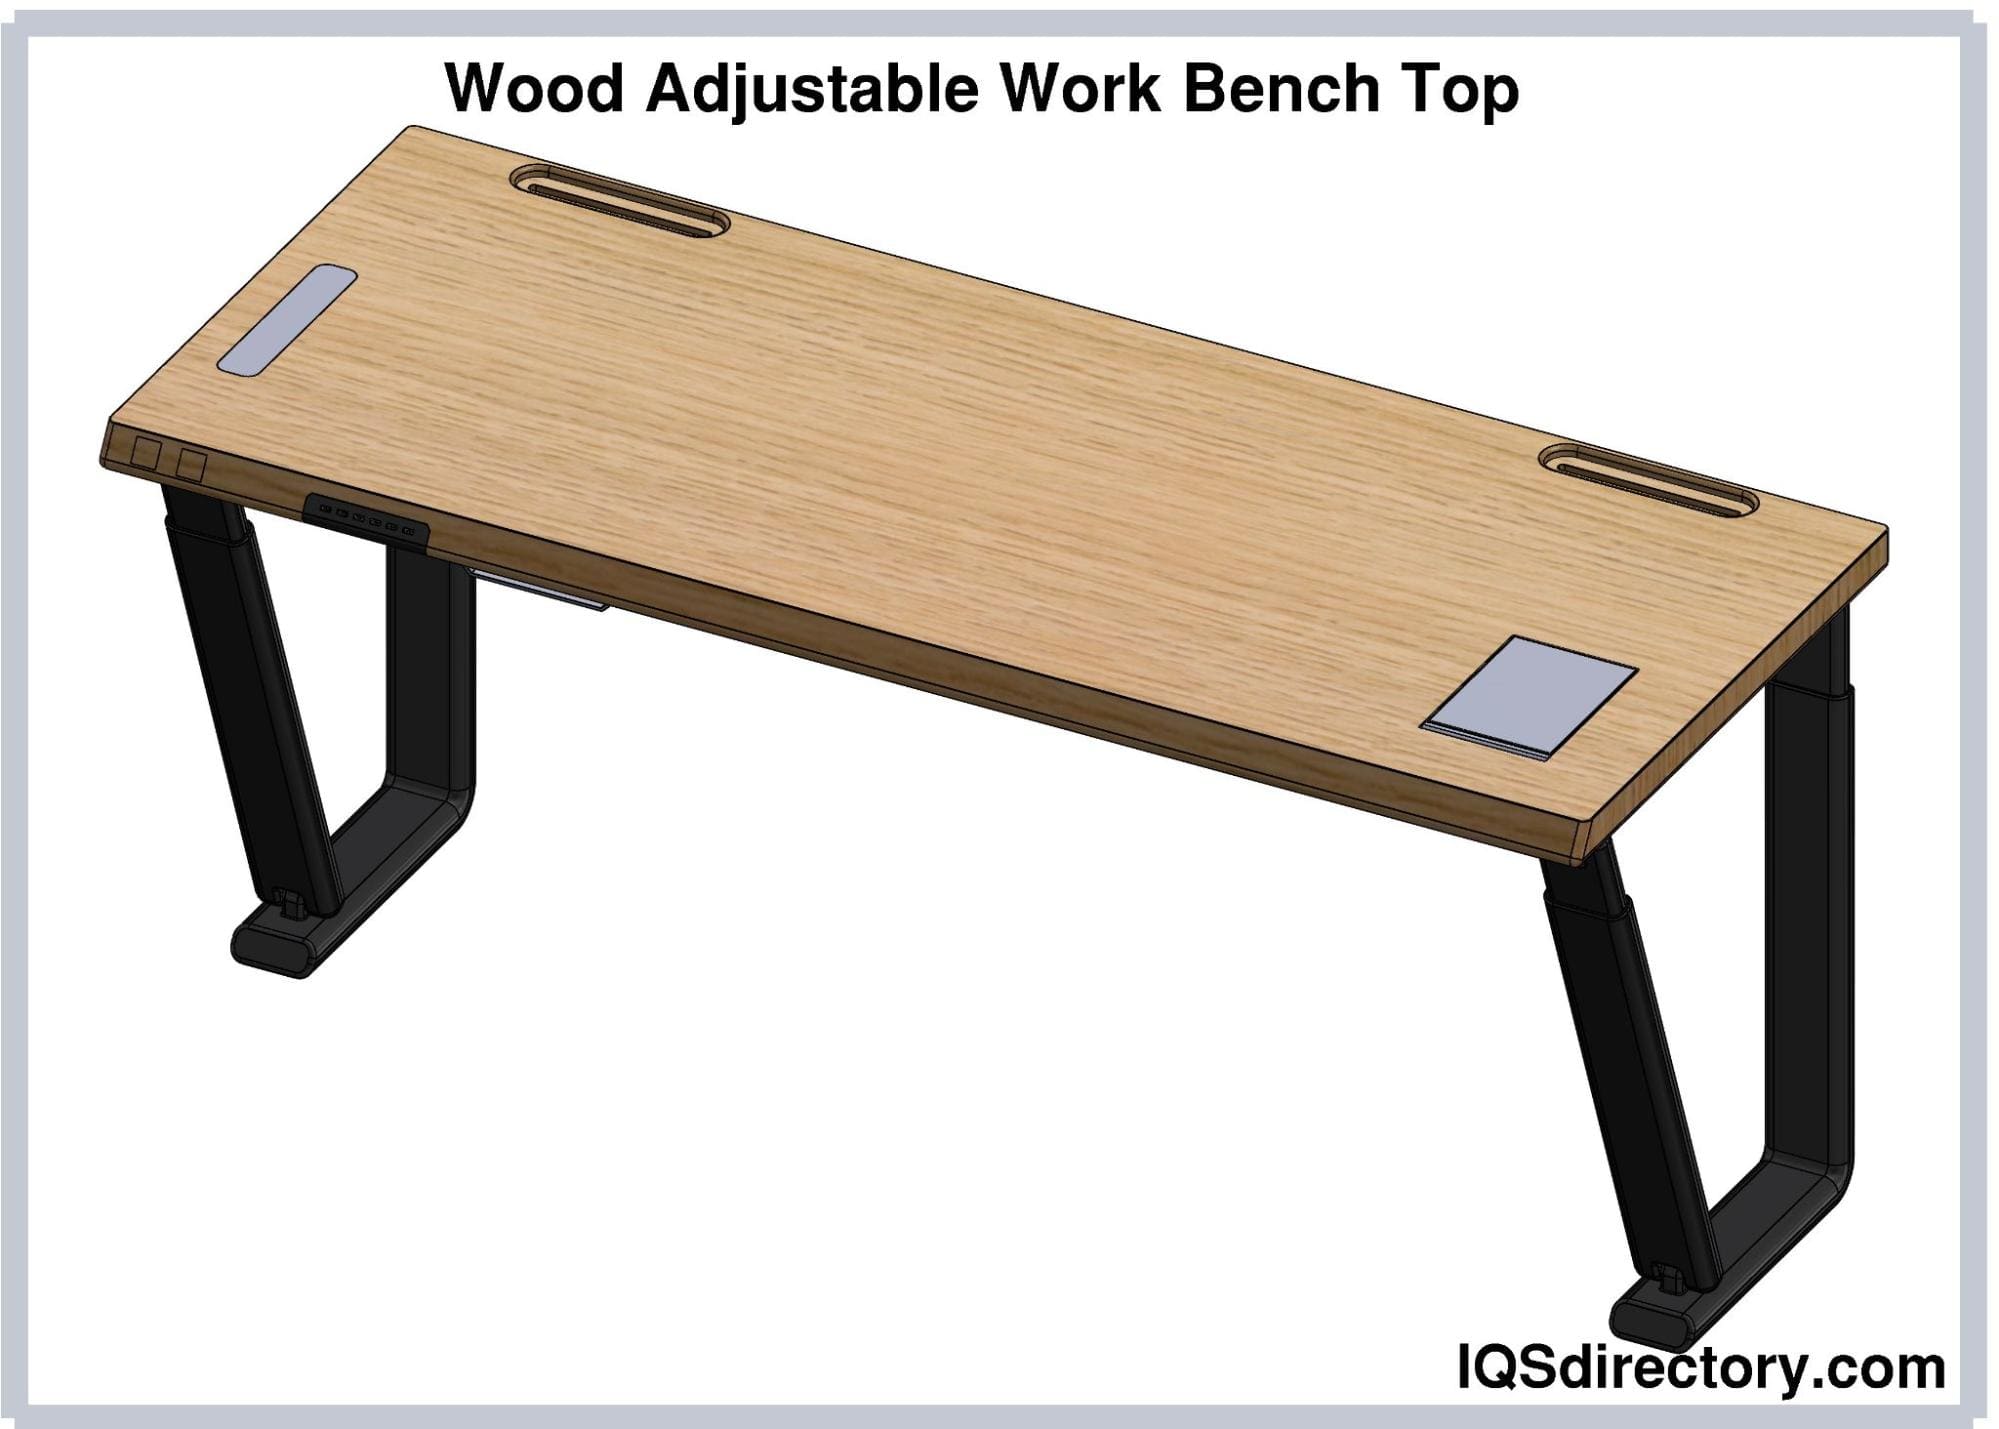 Wood Adjustable Work Bench Top